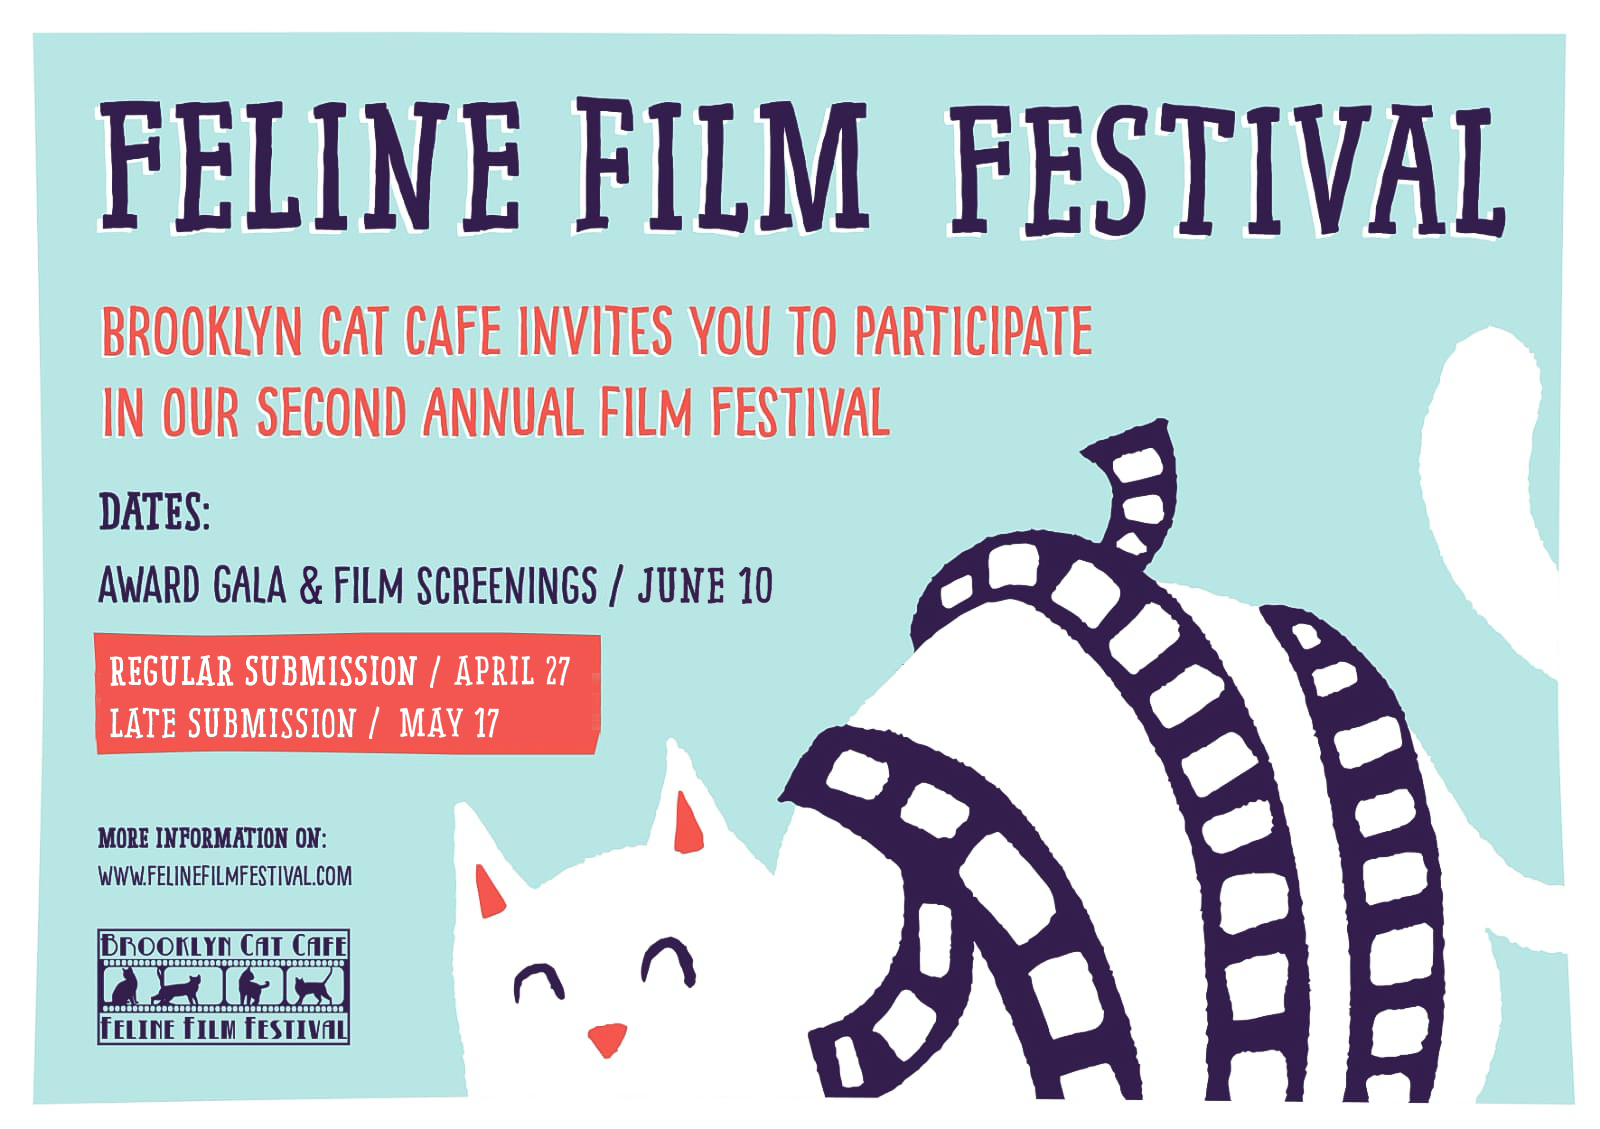 feline film festival